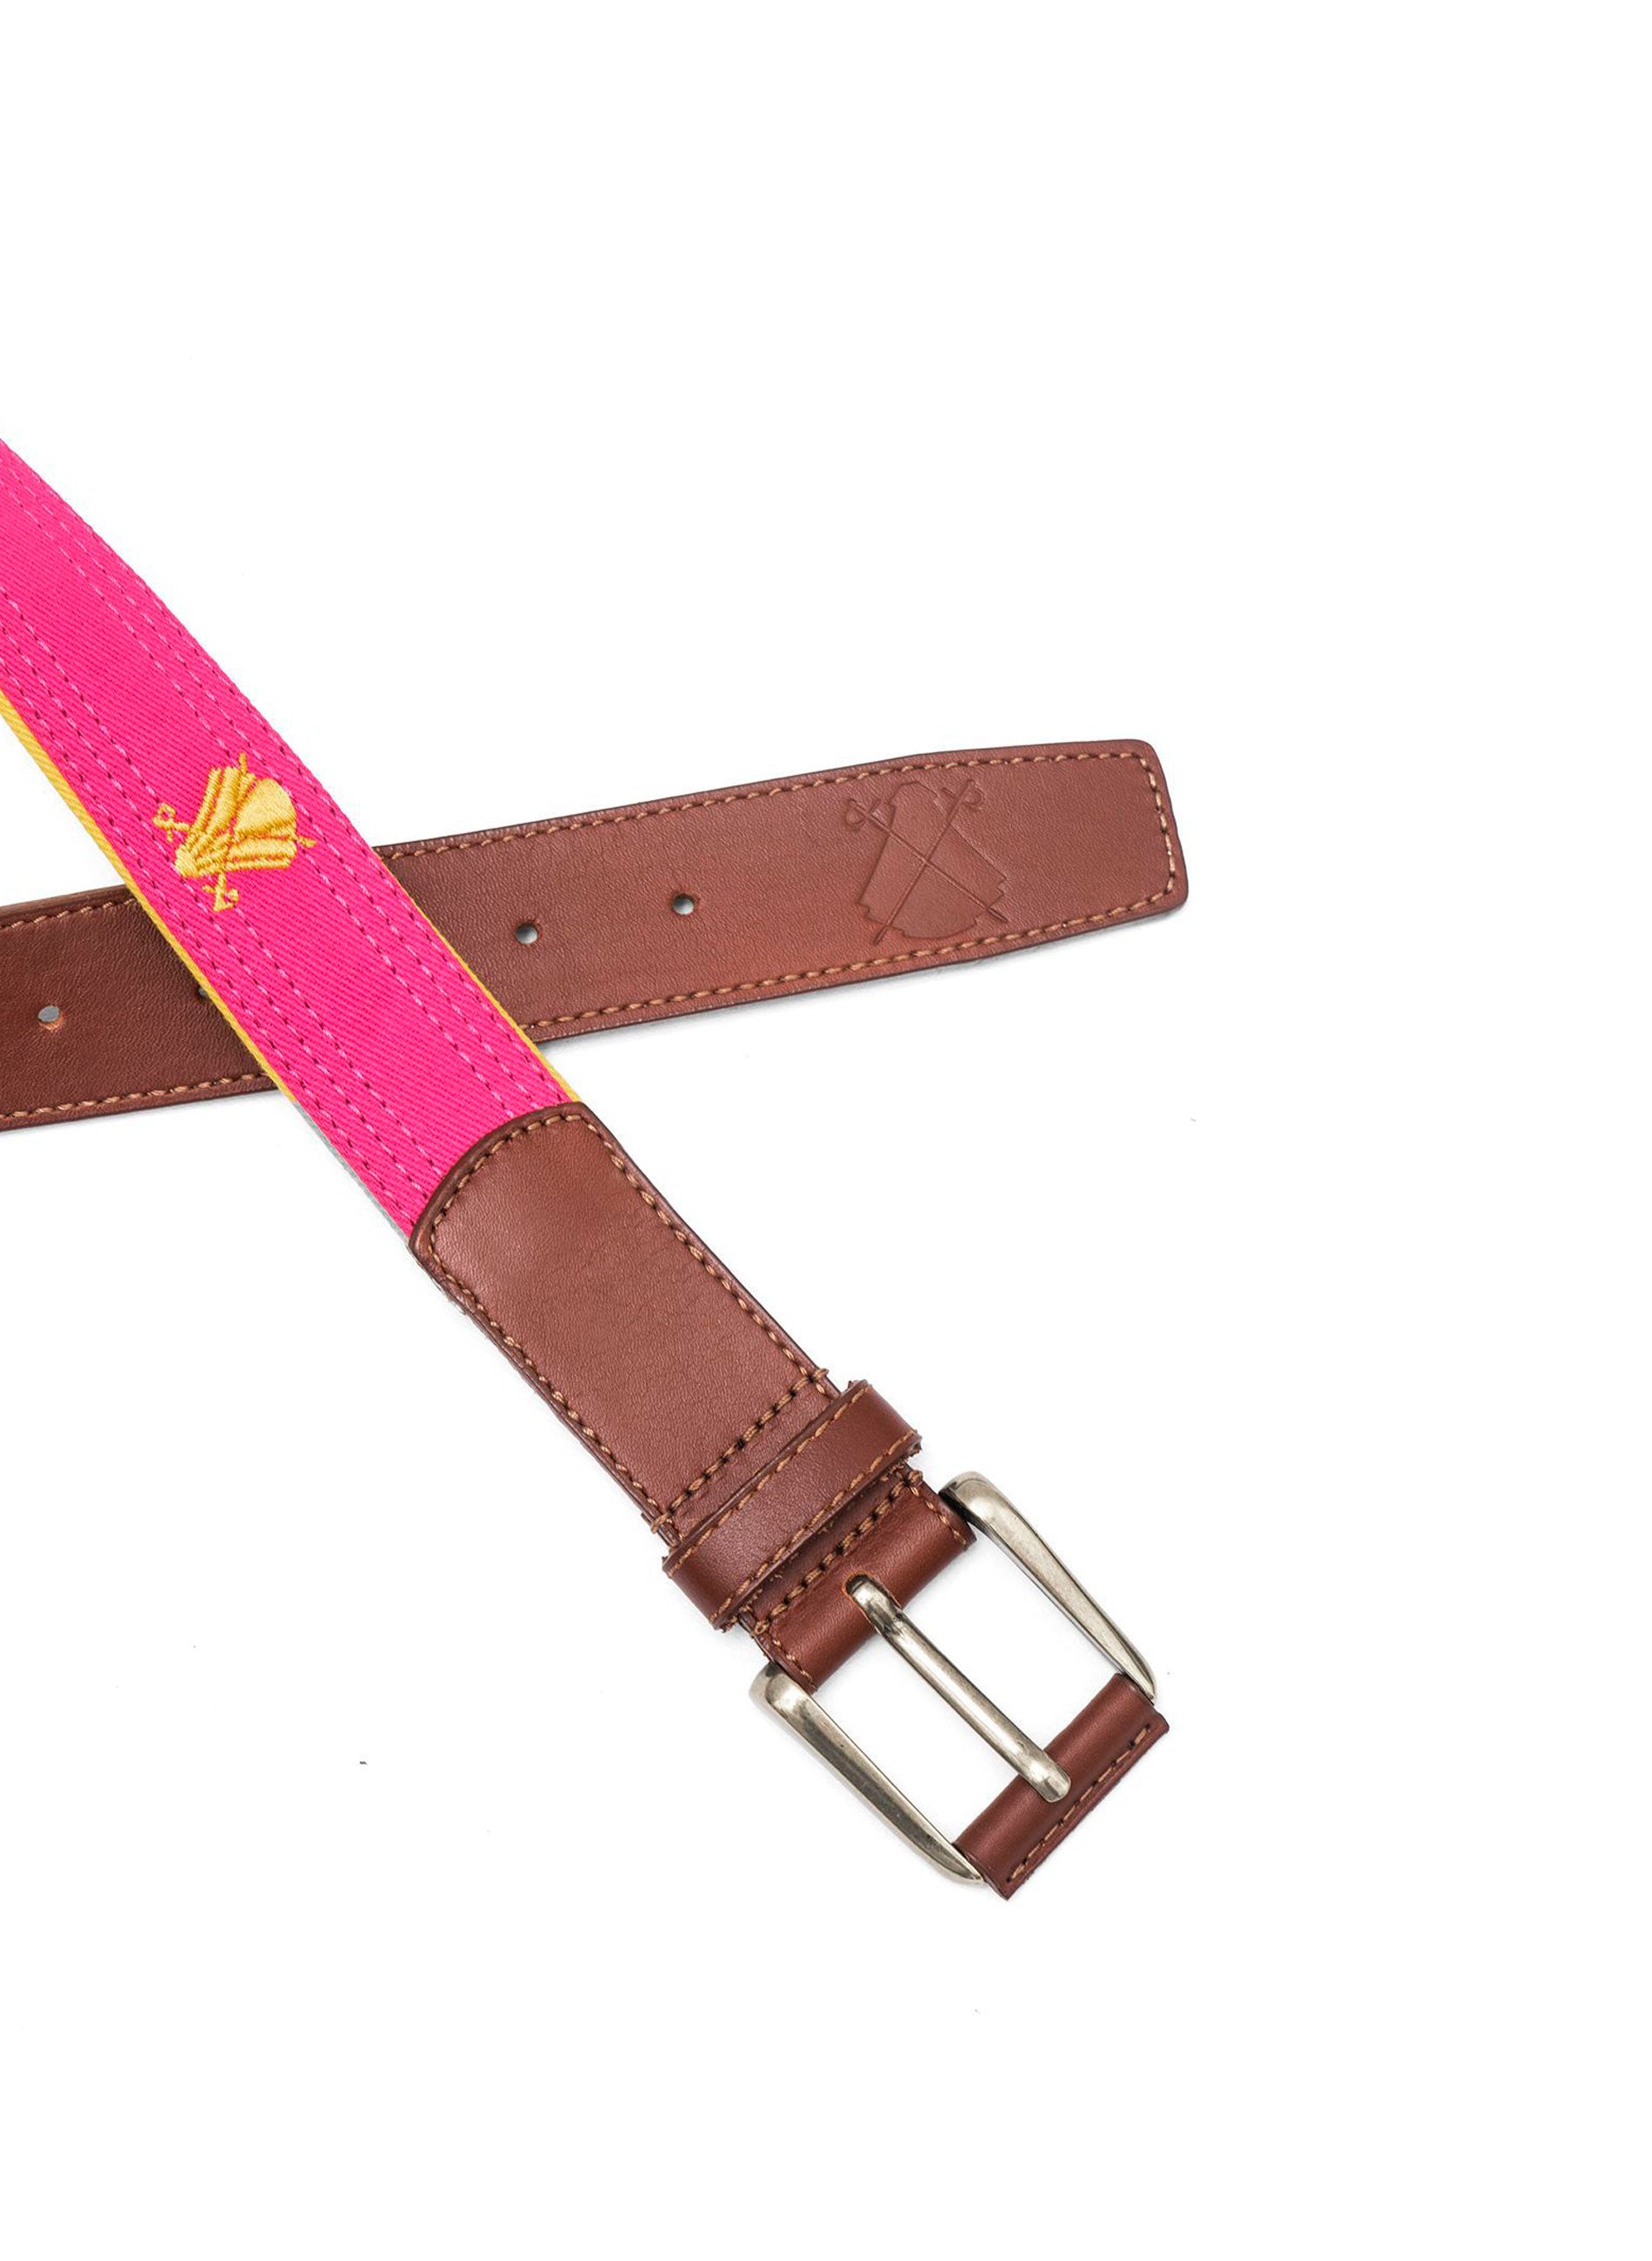 Cinturón Rosa Capote Amarillos – El Capote